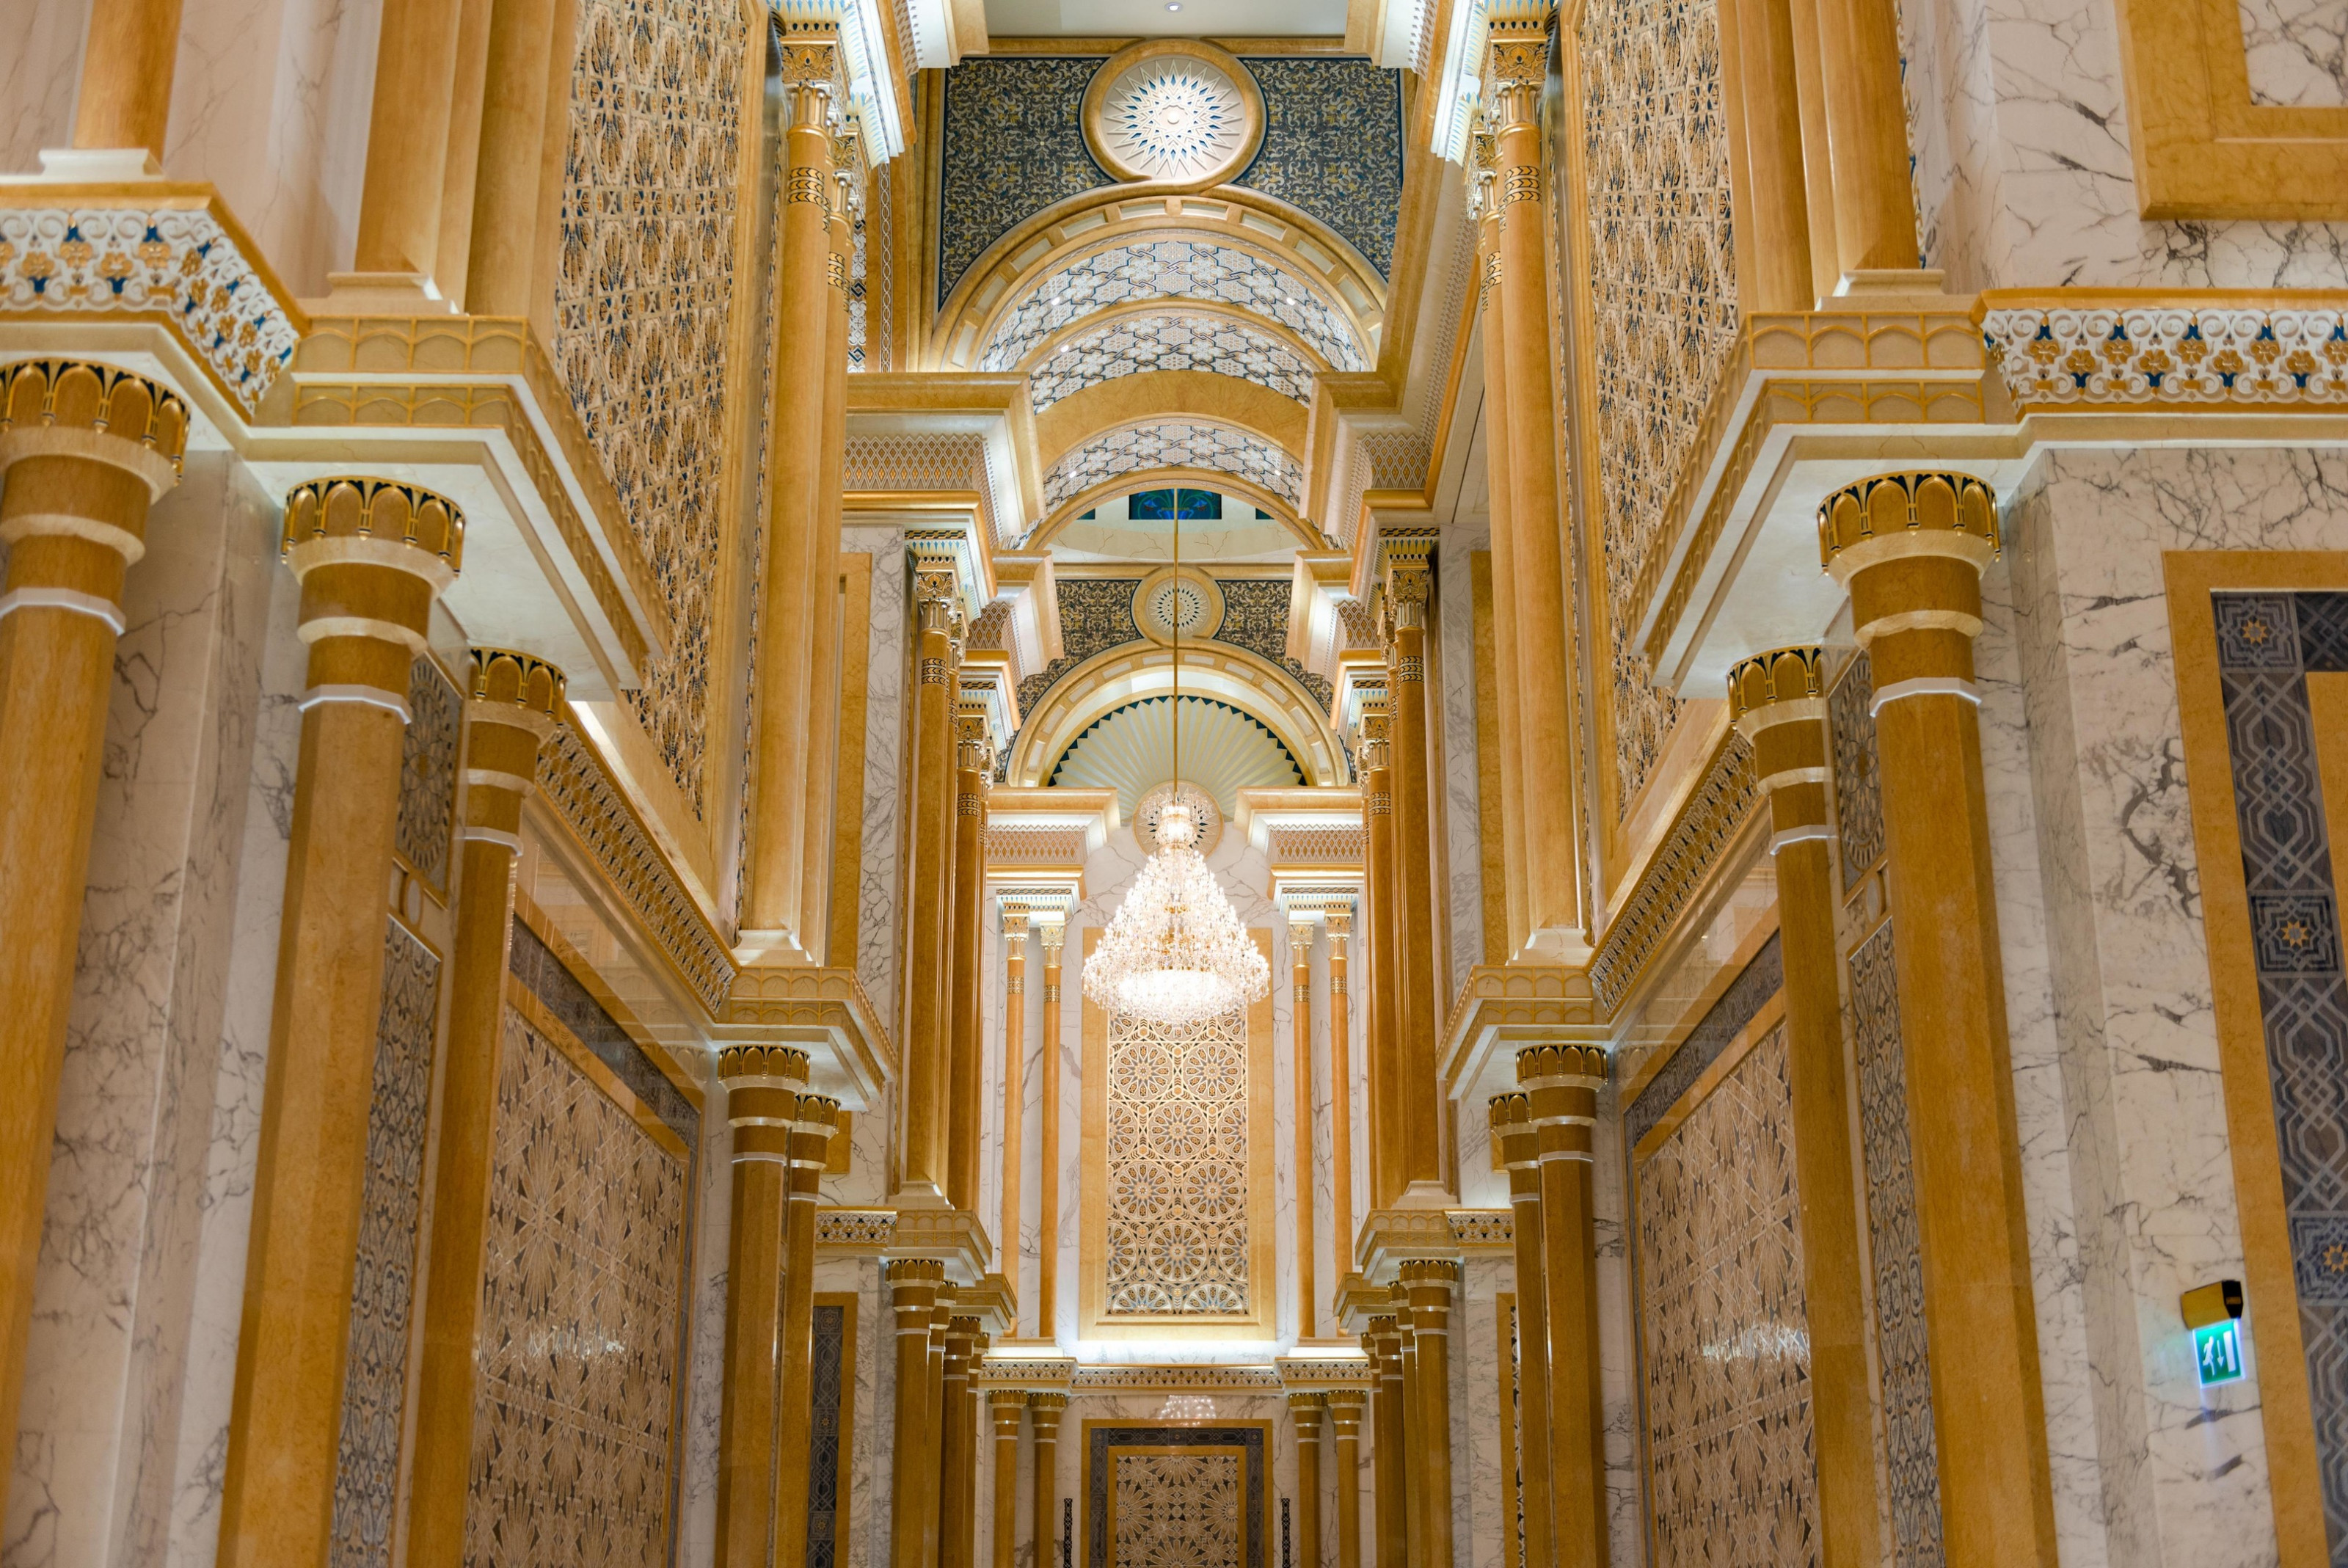 1788 комнат, 257 ванных, и все в золоте: как выглядят роскошные дворцы шейхов только, долларов, шейха, построен, дворец, состояние, оценивается, своих, самых, прямо, которые, личное, который, является, султана, человек, более, главной, гостей, можно